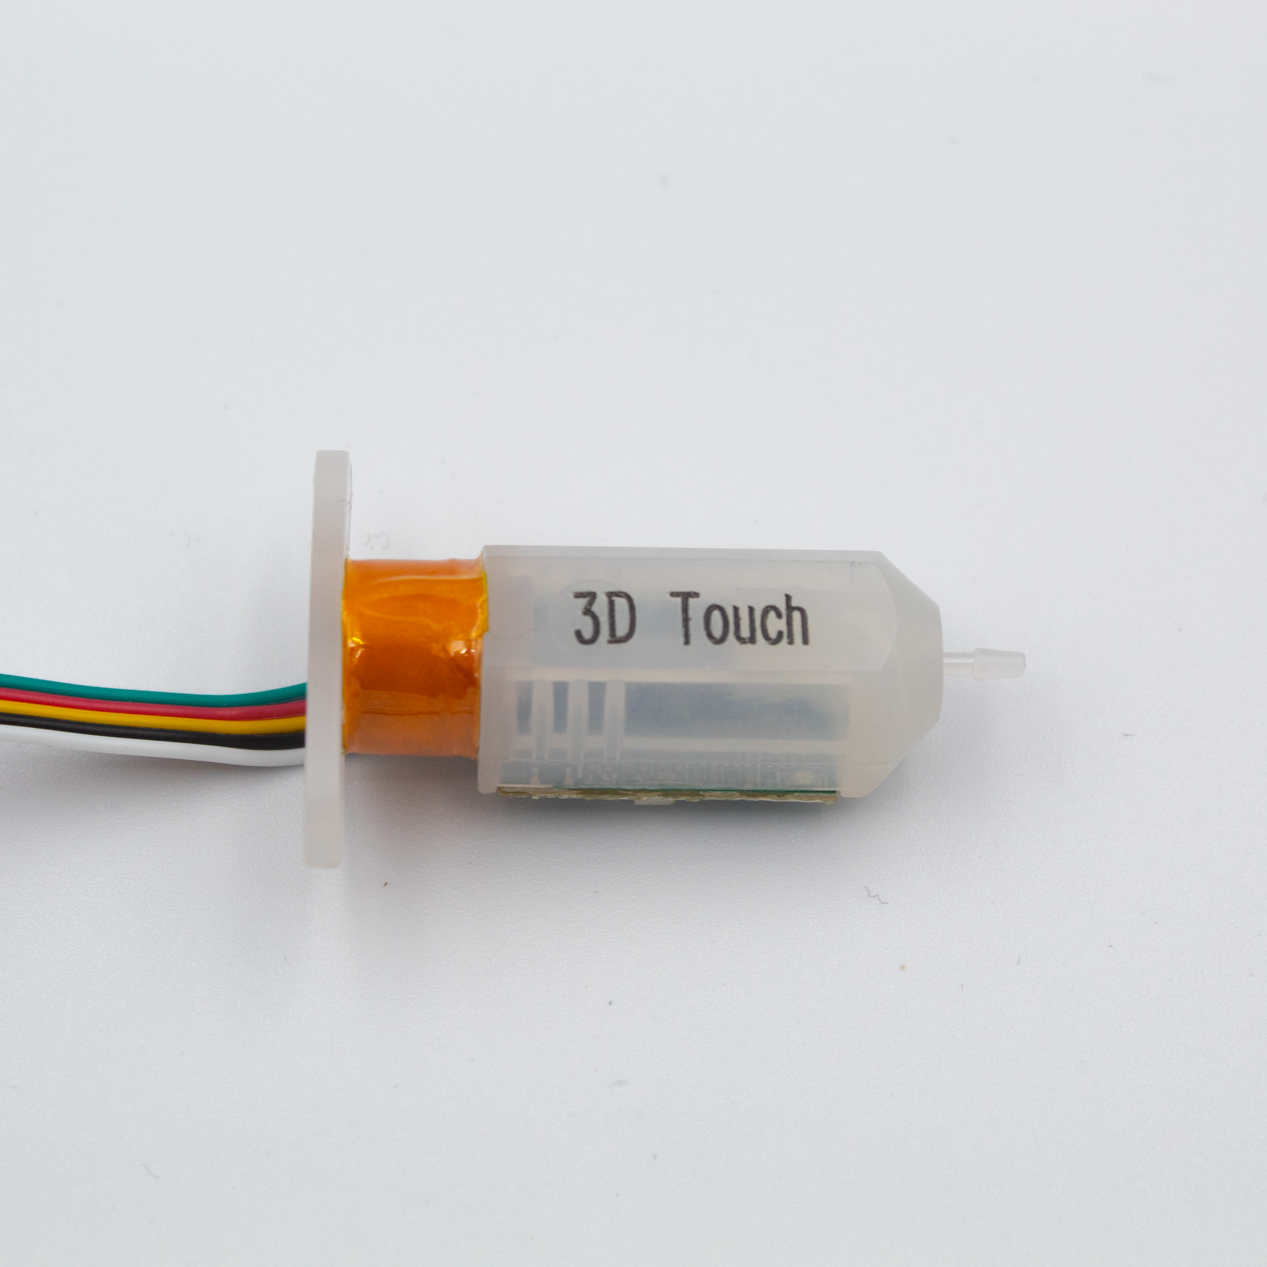 Makerbase 3D Touch Sensor Auto Bed Leveling reprap – TwoTrees Official Shop